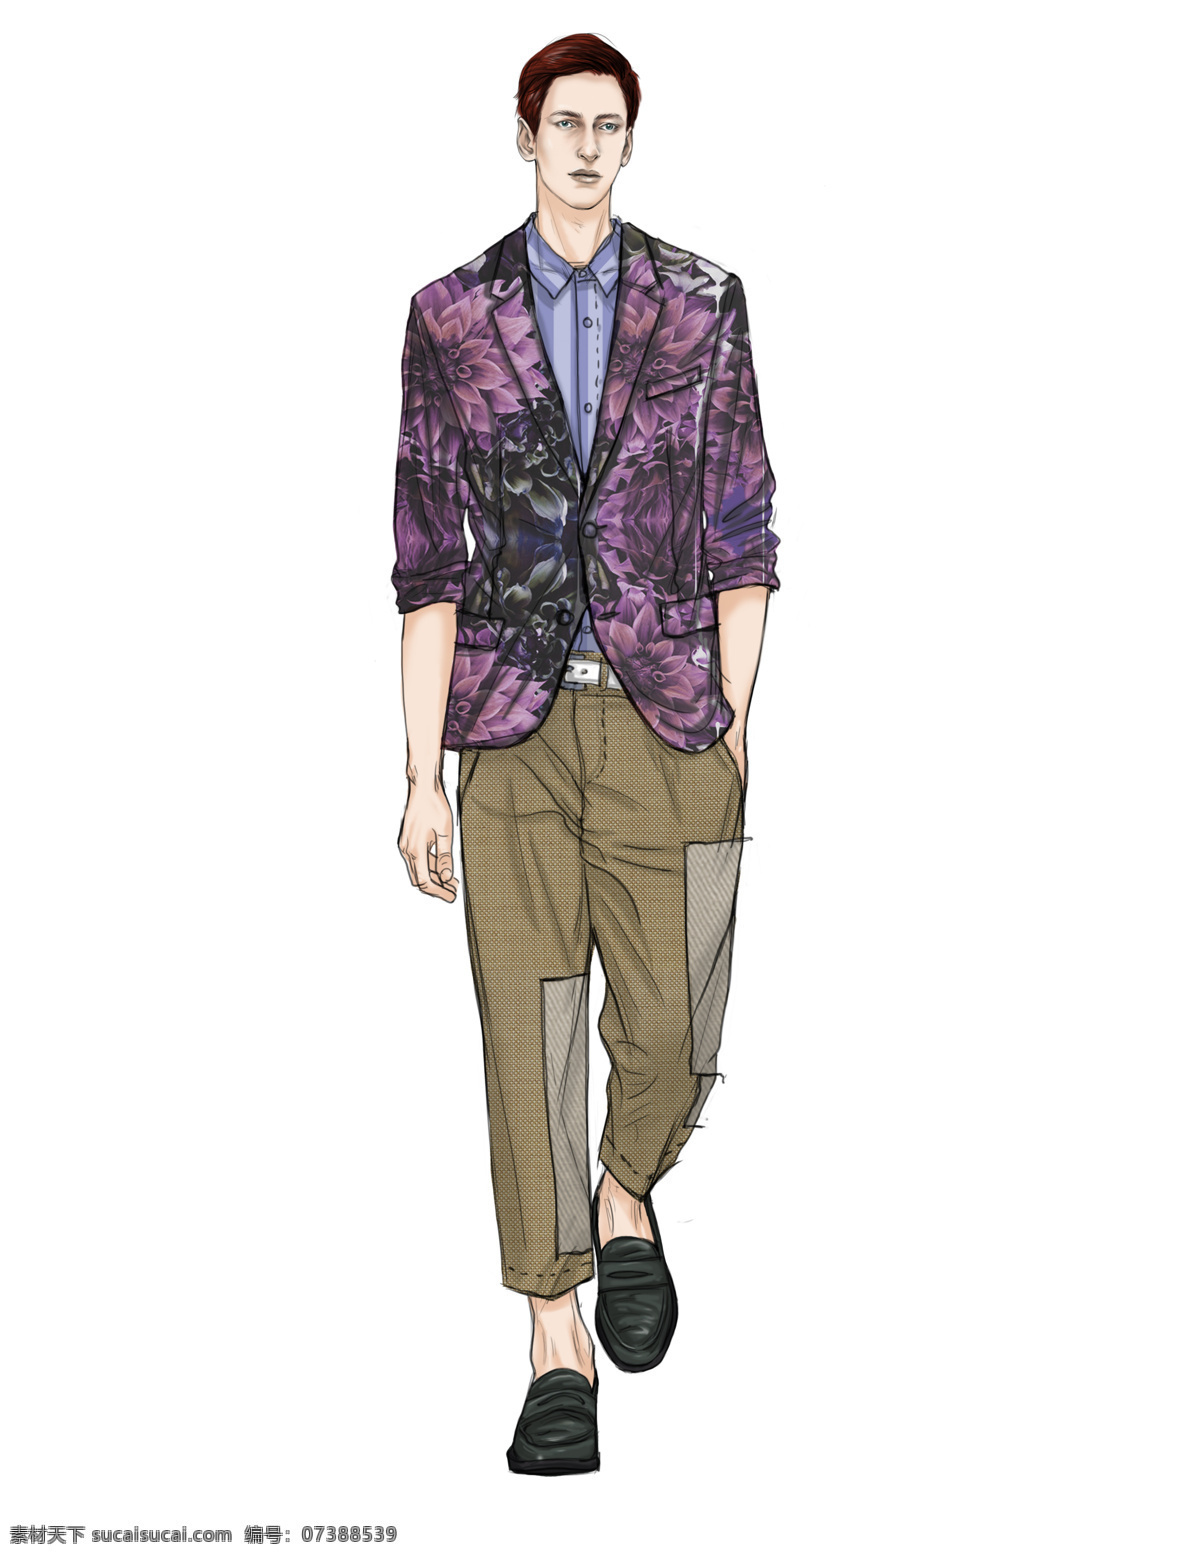 时尚 闷 骚 紫色 西装 外套 男装 效果图 服装设计 男装效果图 时尚男装